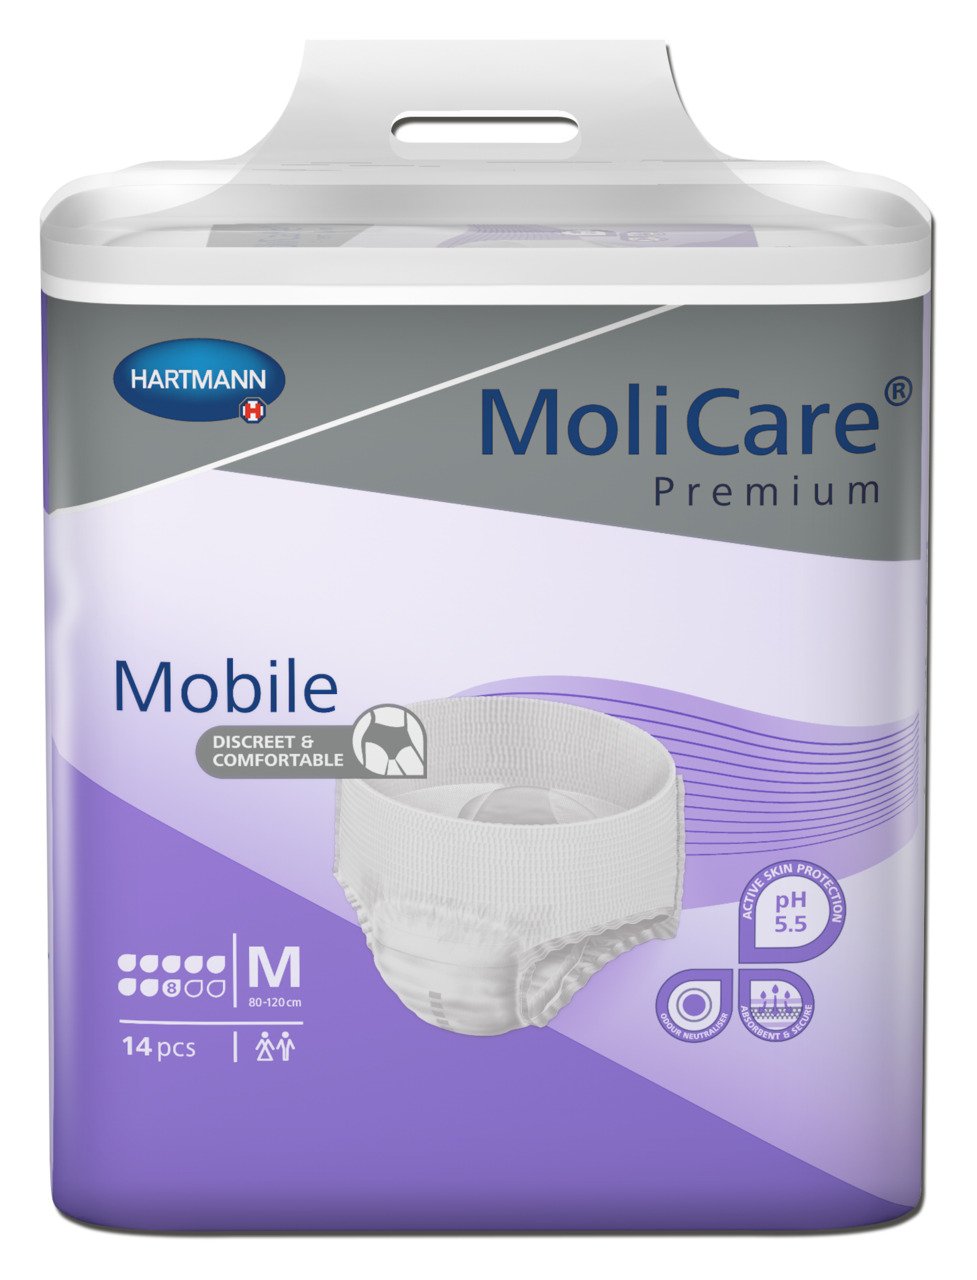 MoliCare Premium Mobile Medium 8 drops 42